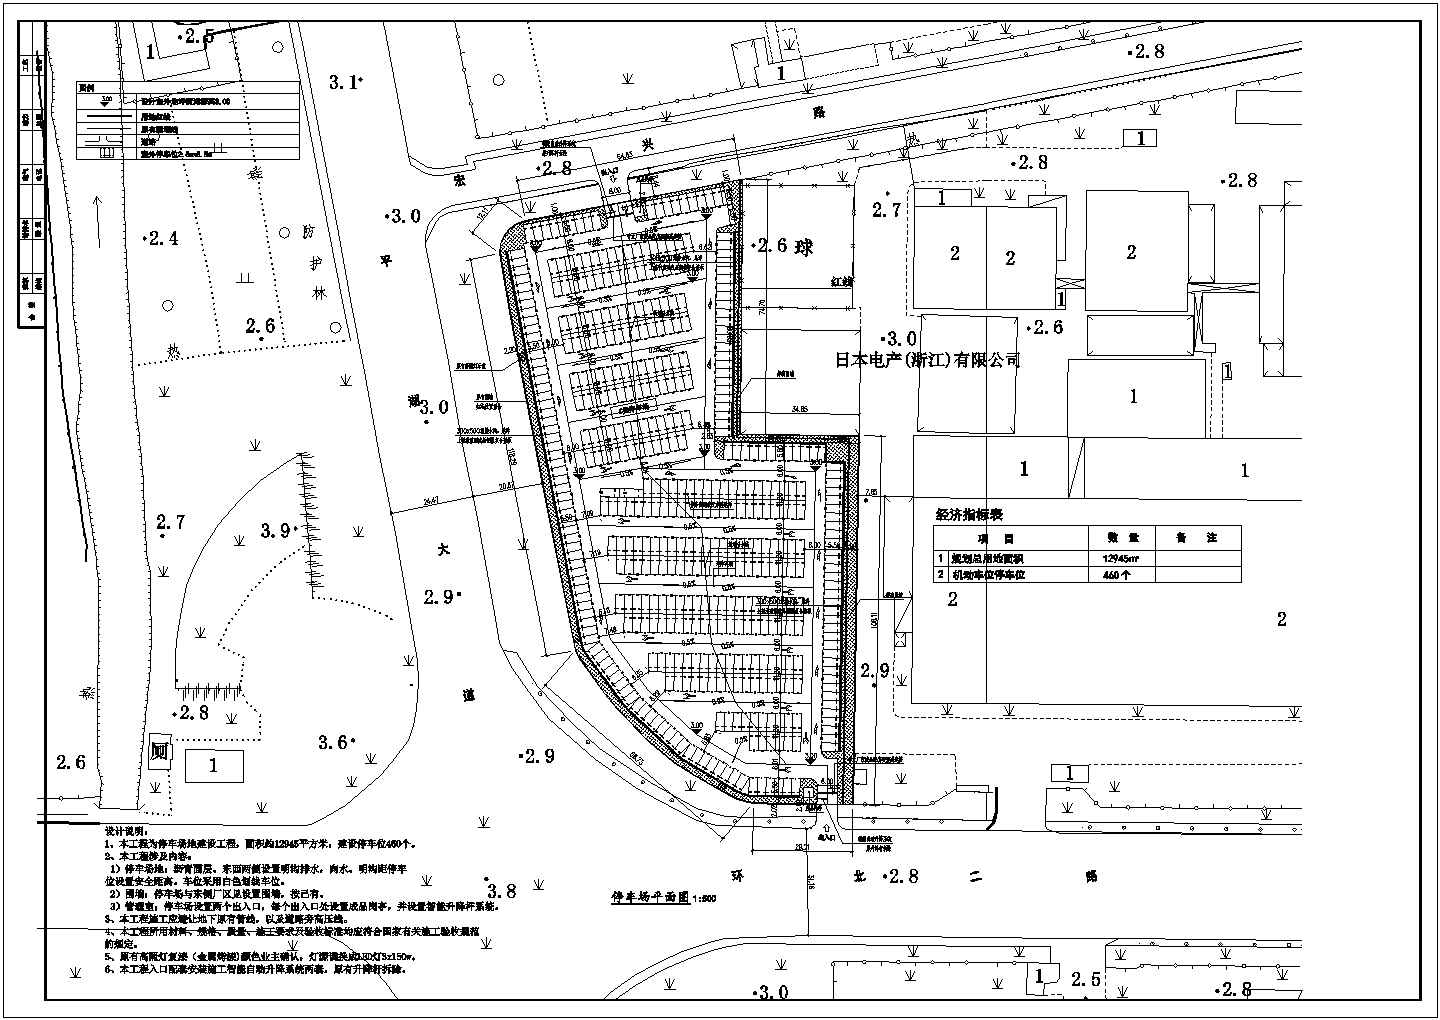 日电有限公司西侧地块停车场改造 土建设计图